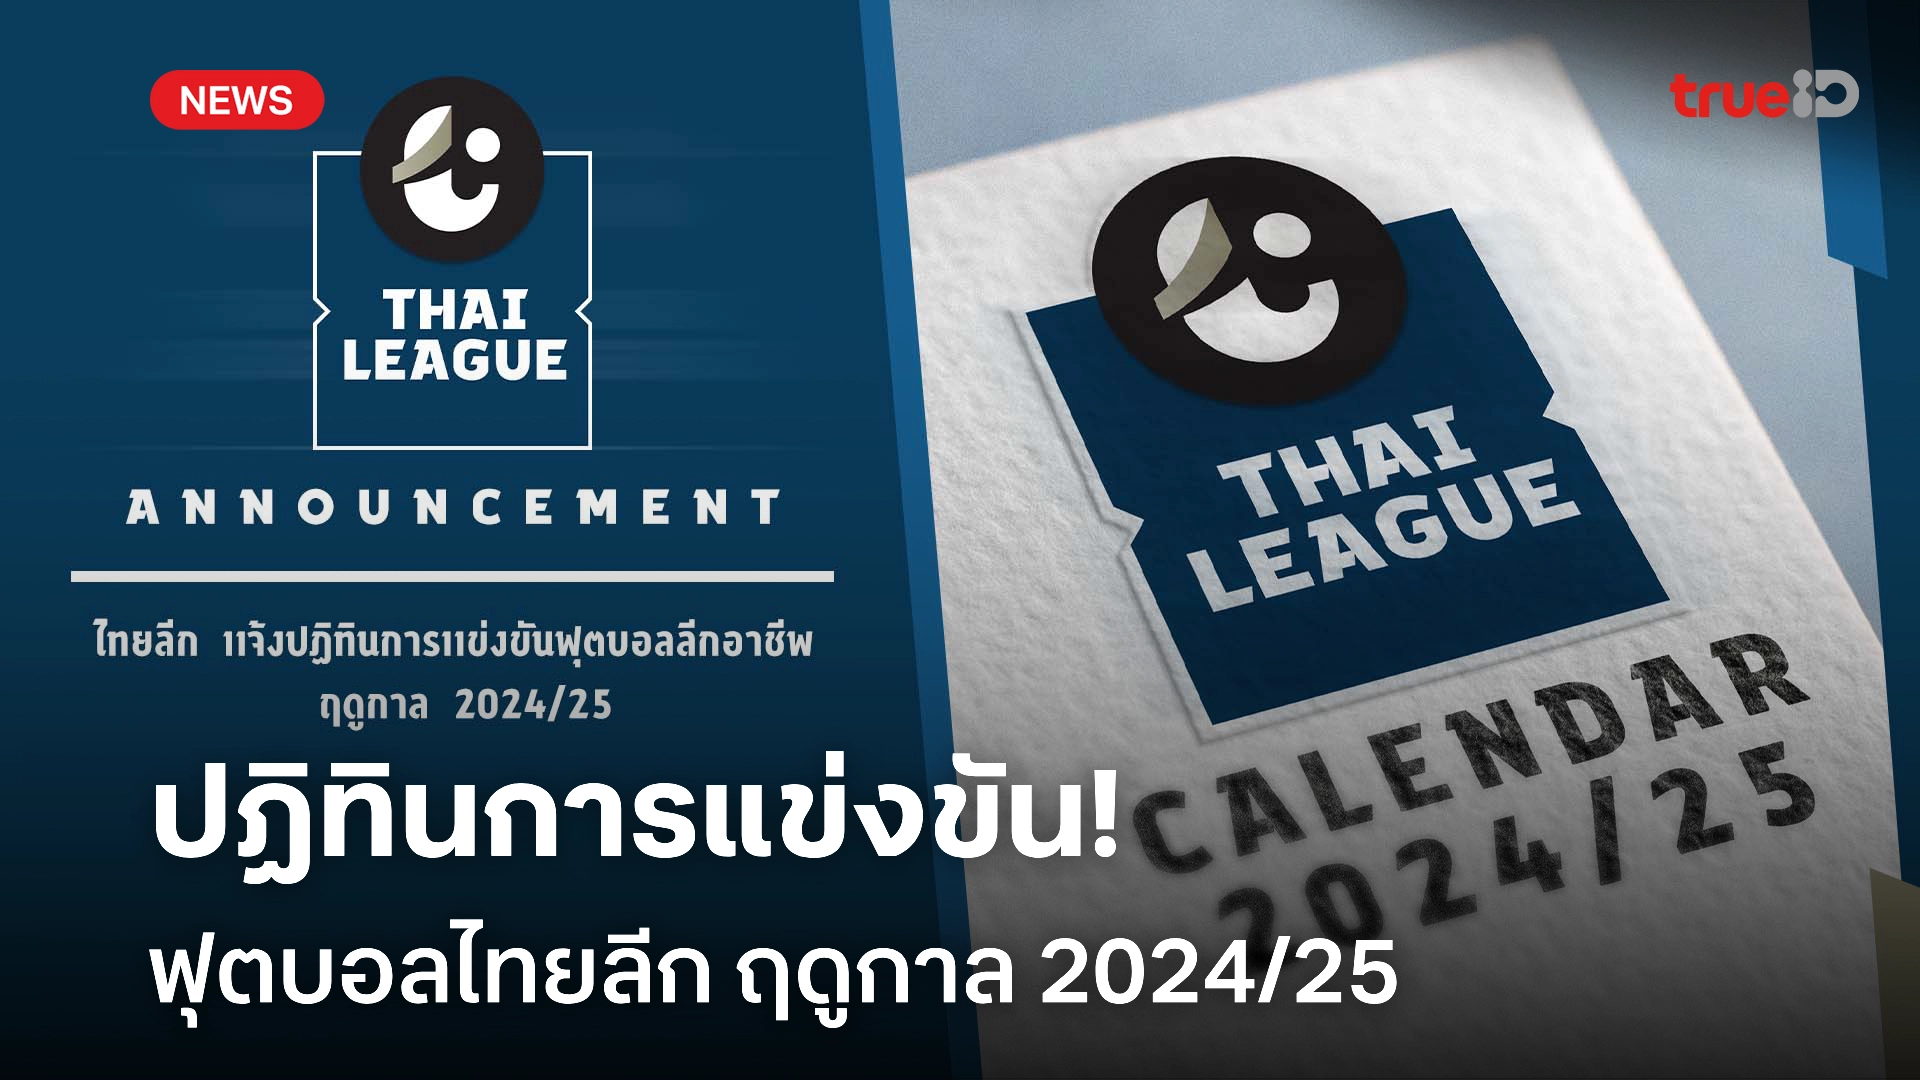 OFFICIAL : ไทยลีก แจ้งปฏิทินการแข่งขันฟุตบอลลีกอาชีพ ฤดูกาล 2024/25